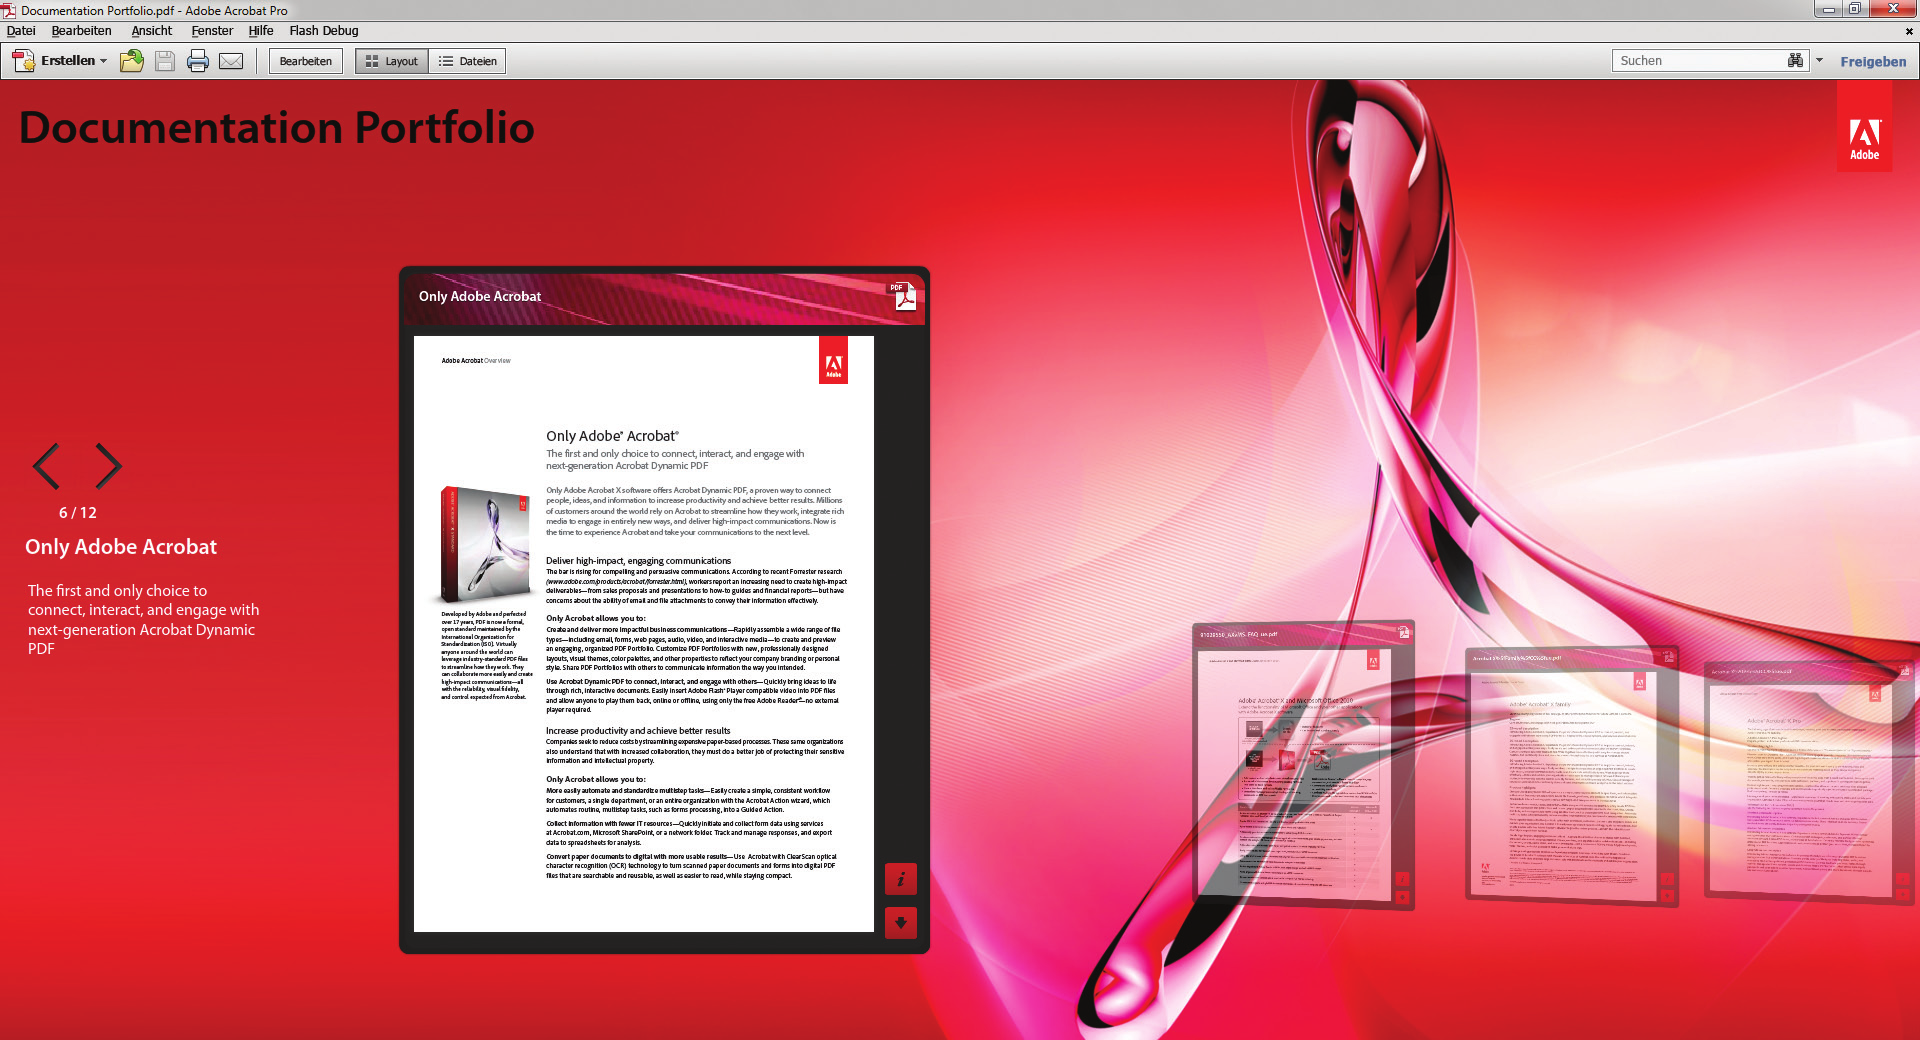 Adobe Acrobat X Pro Professionelle Adobe PDF-Dokumente vorbereiten, schützen und bereitstellen Nutzen Sie die leistungsstarke Technologie Acrobat Dynamic PDF zur Bereitstellung innovativer Adobe